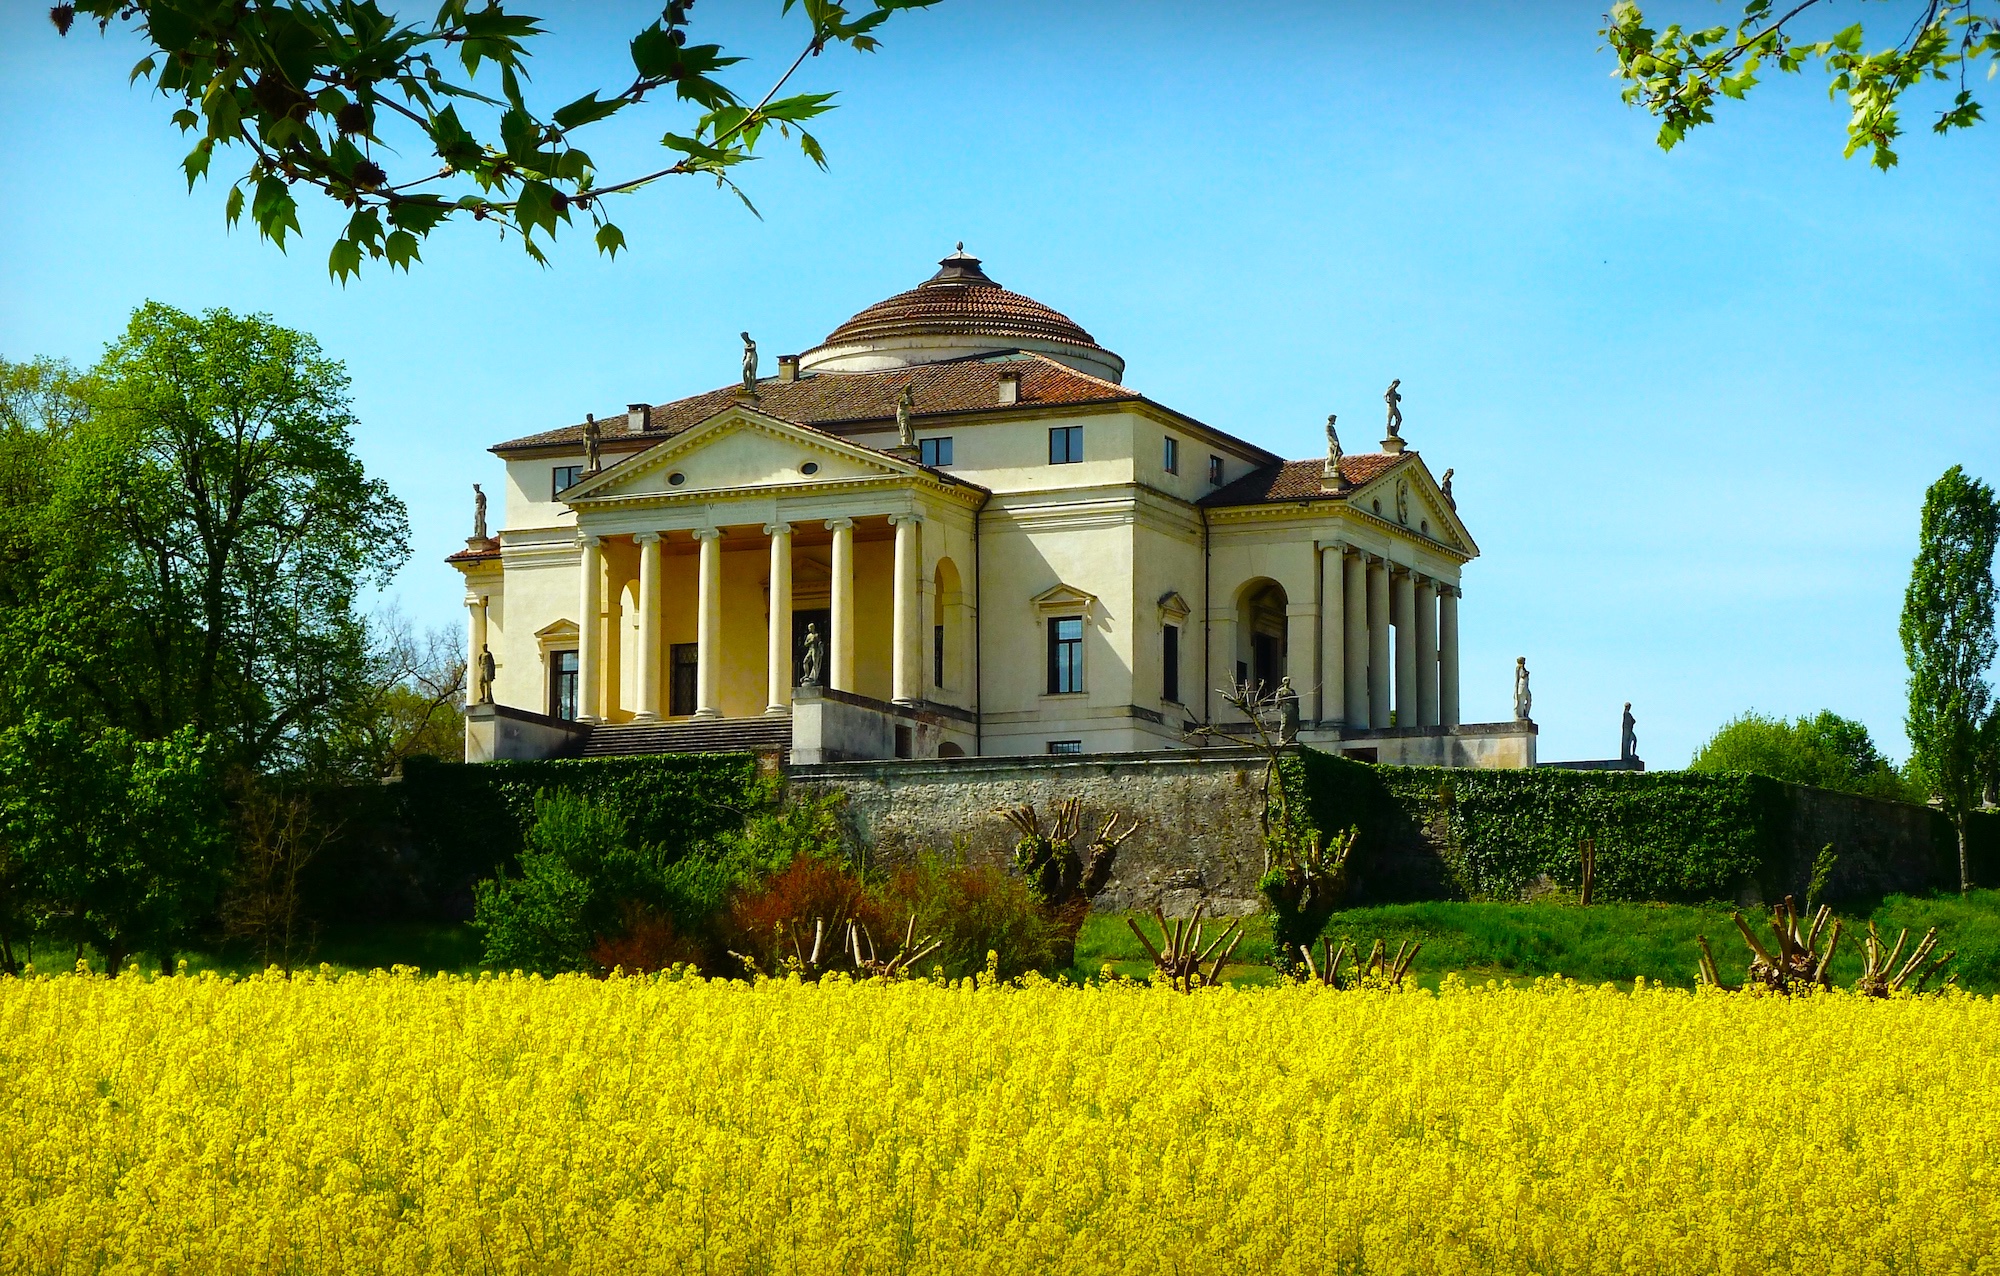 Palladio's Villa La Rotonda